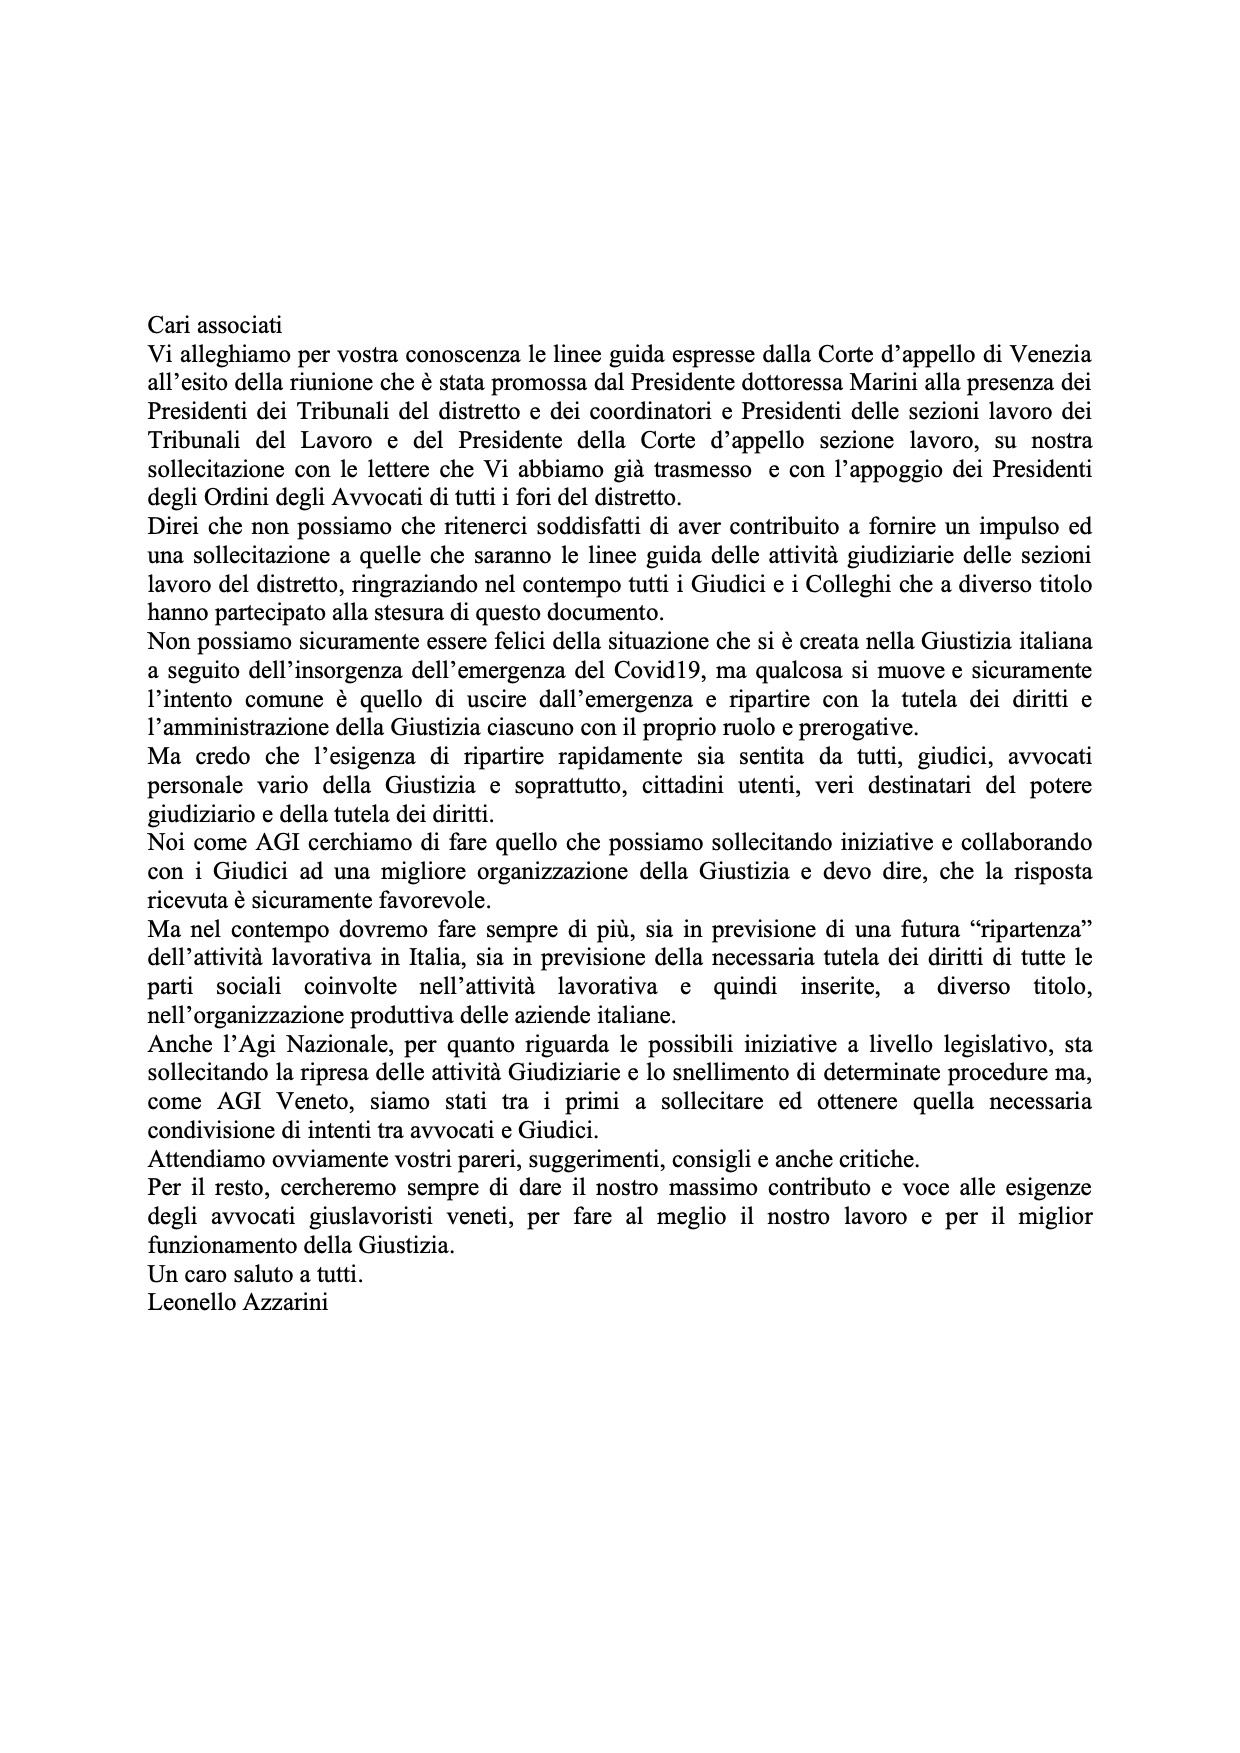 Lettera del Presidente AGI Veneto ai Presidenti degli Ordini degli Avvocati del Distretto